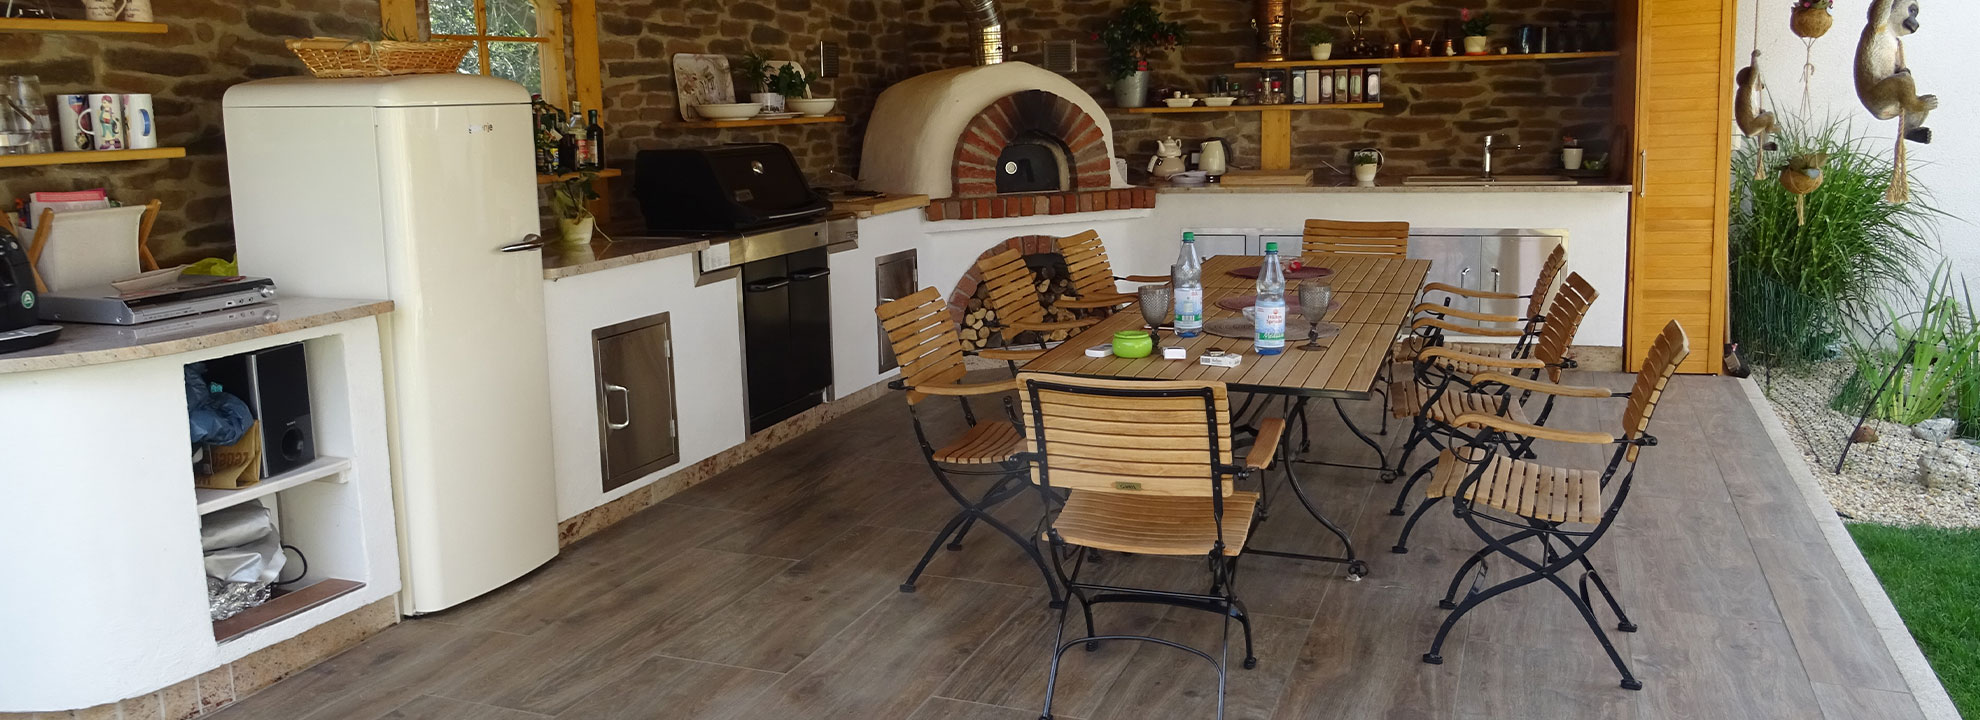 Outdoor Küche überdacht in Nürnberg; rustikal mit Pizza-Ofen, Gasgrill, Outdoor-Kühlschrank